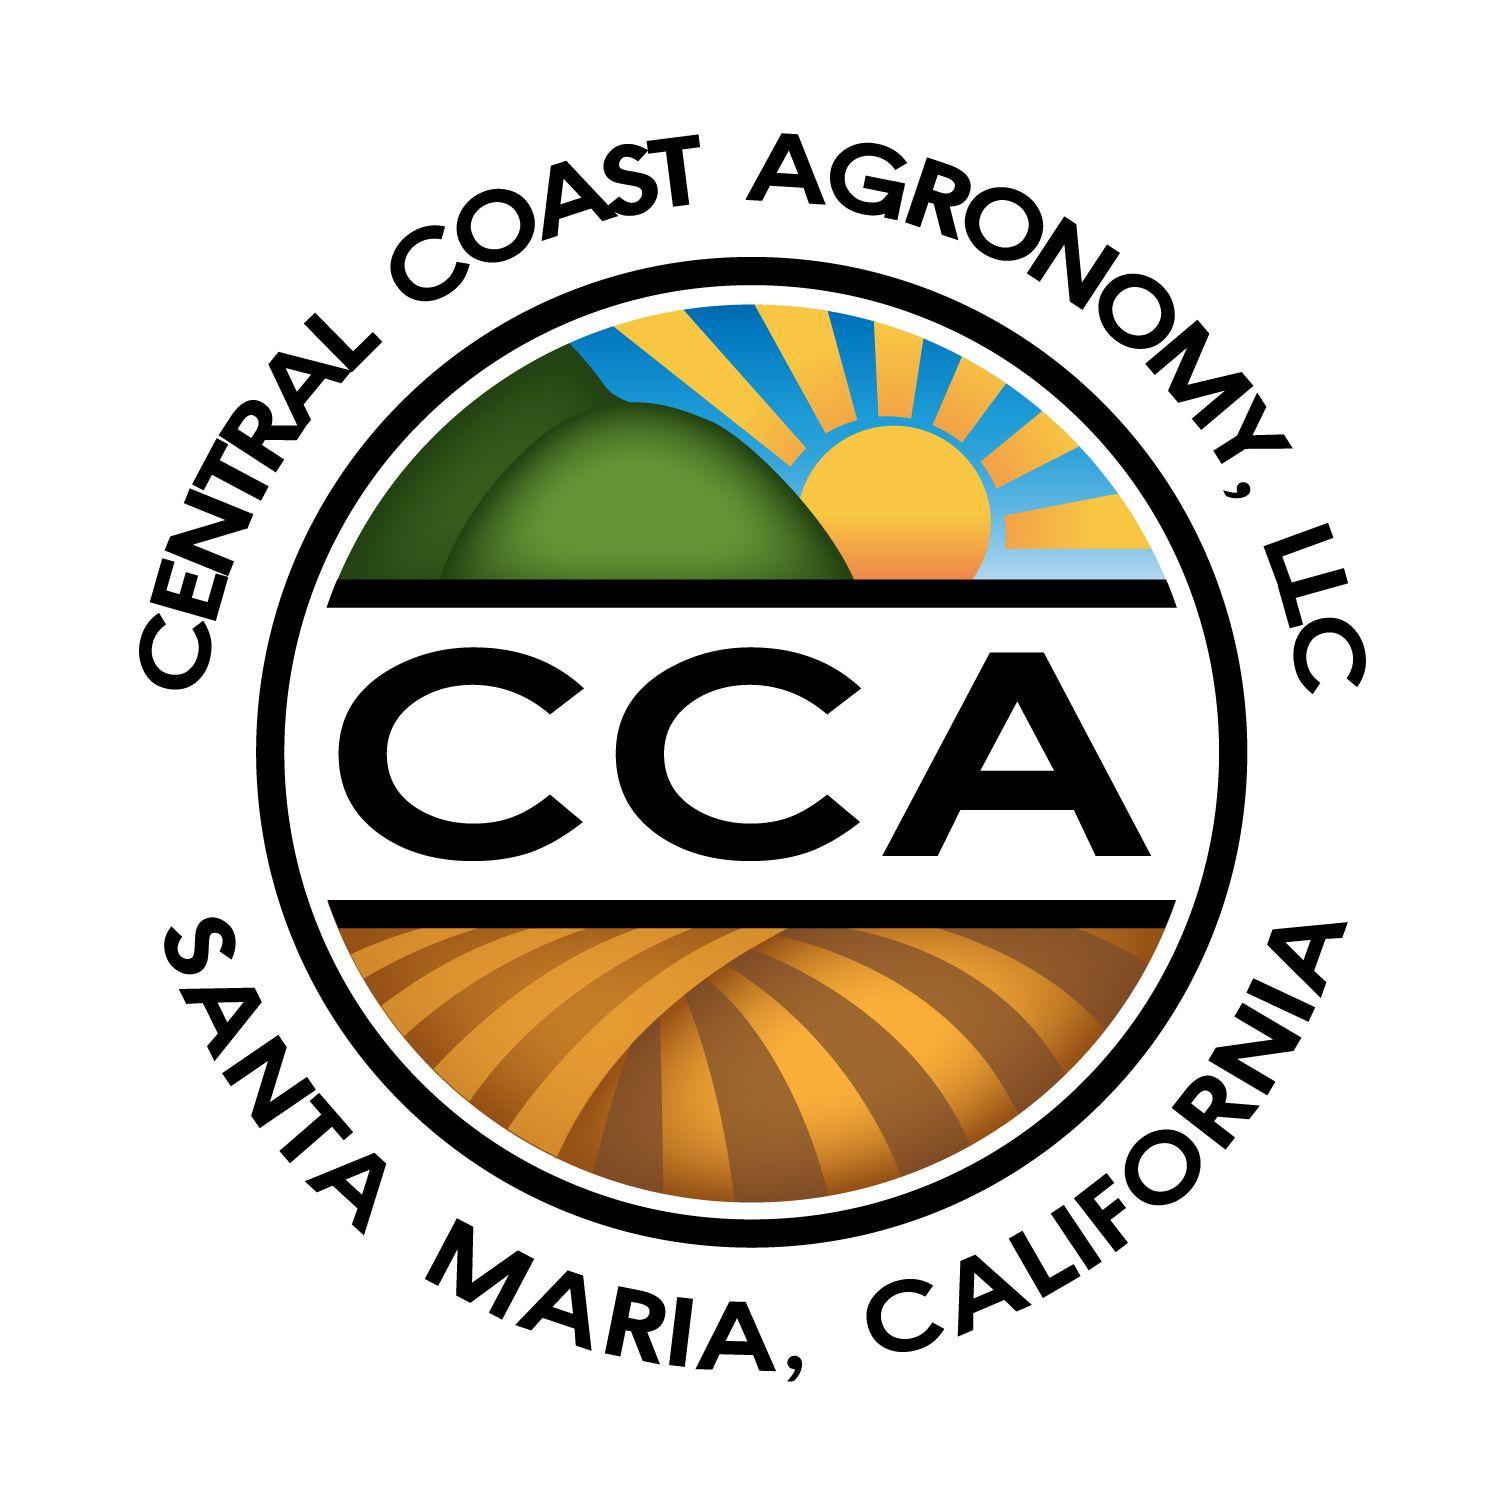 Agronomy Logo - Central Coast Agronomy - Logo Design - ishCreatives